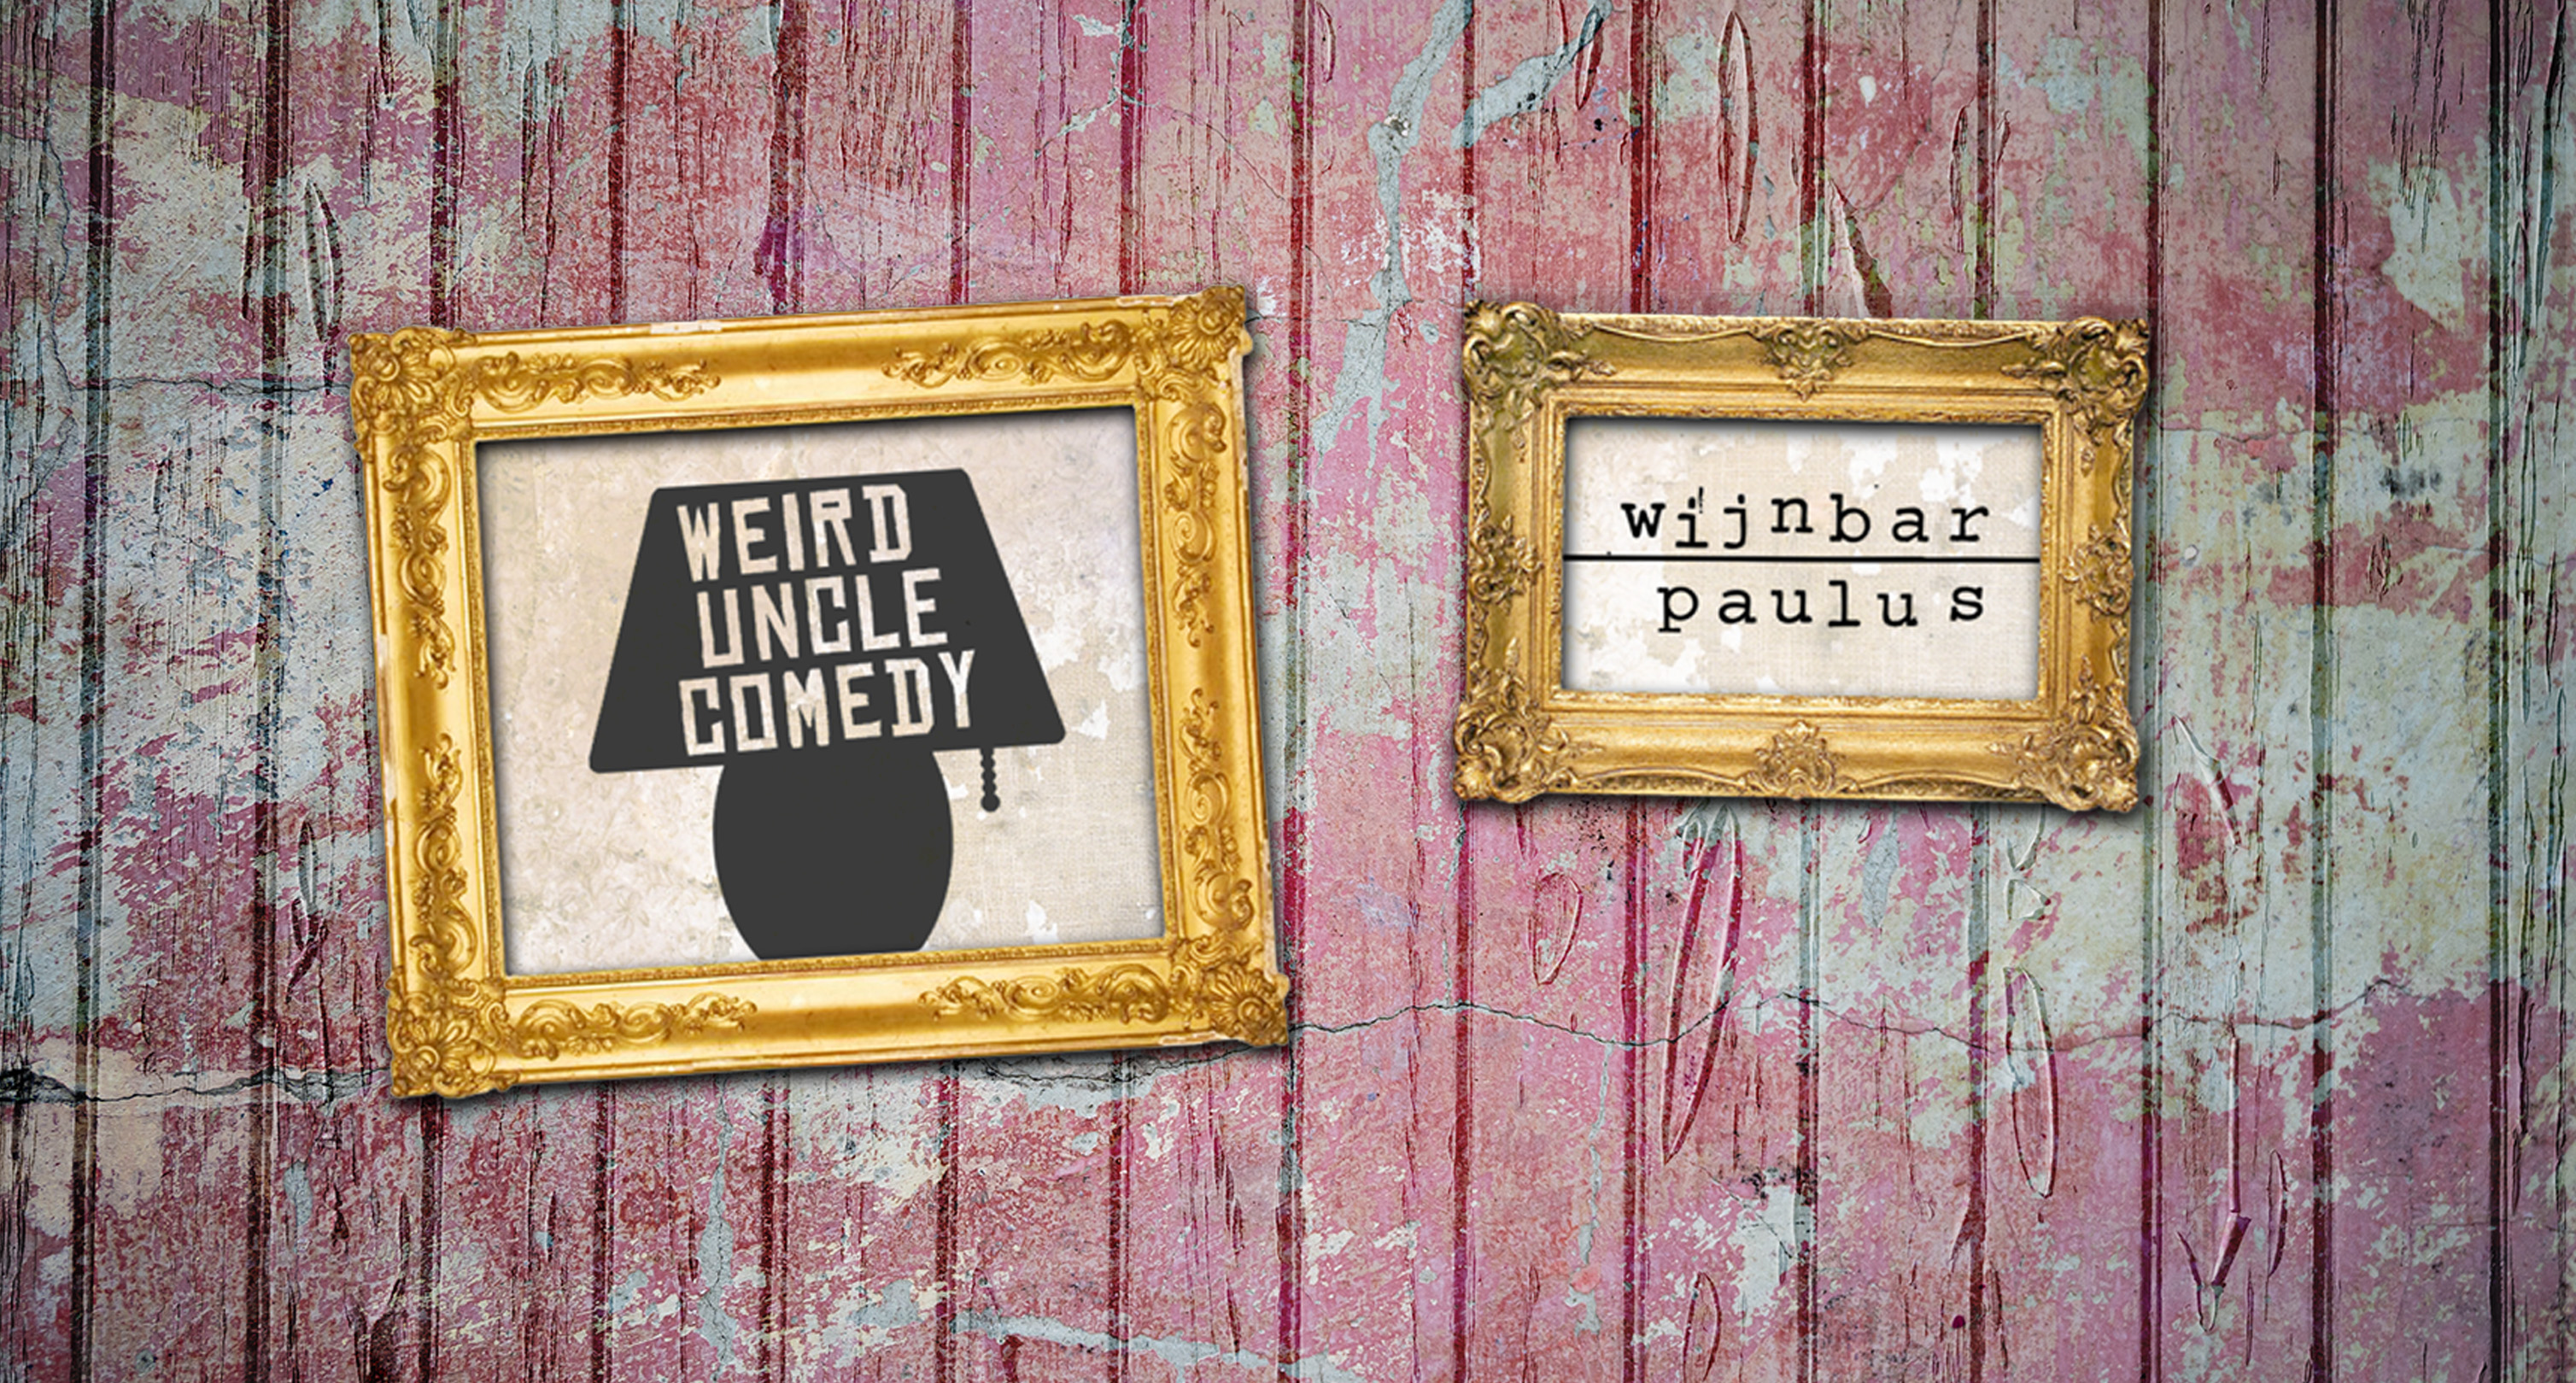 Ticket kopen voor evenement Open Mic Comedy @Wijnbar Paulus (Eng)